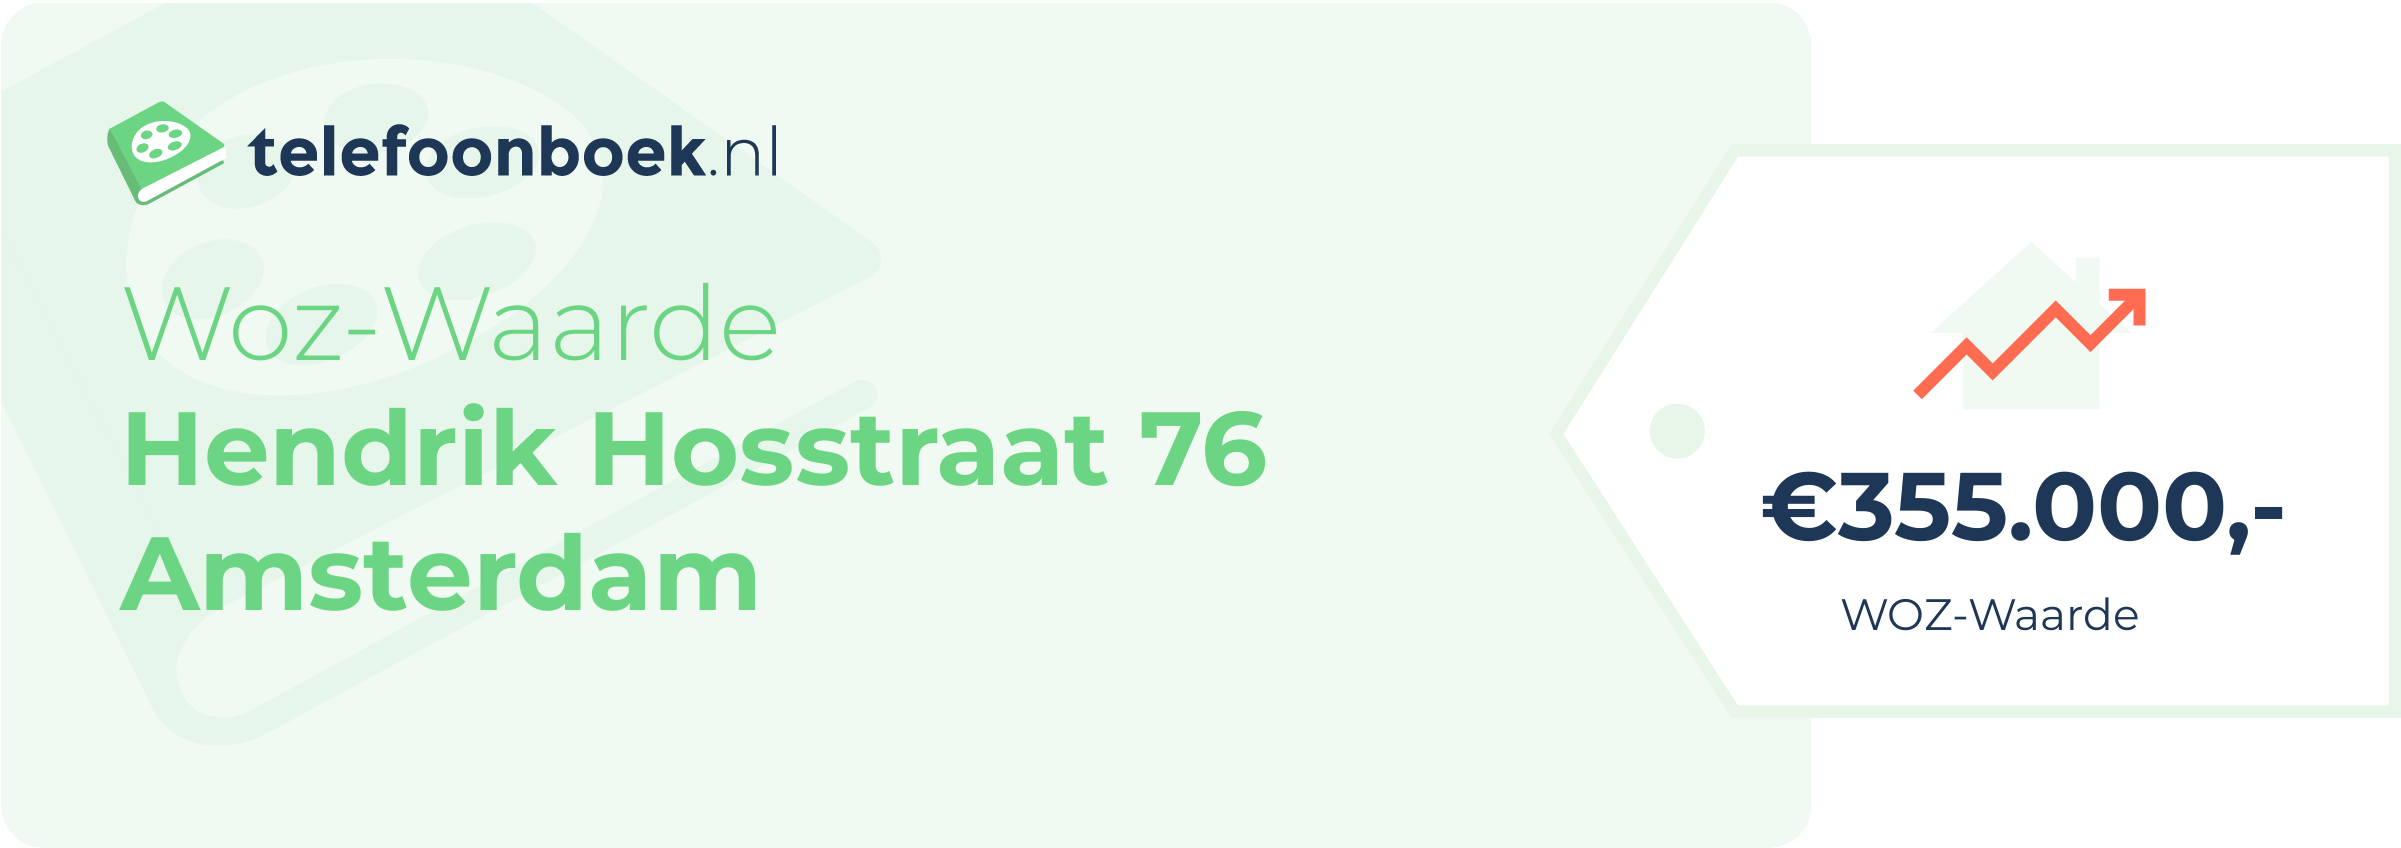 WOZ-waarde Hendrik Hosstraat 76 Amsterdam